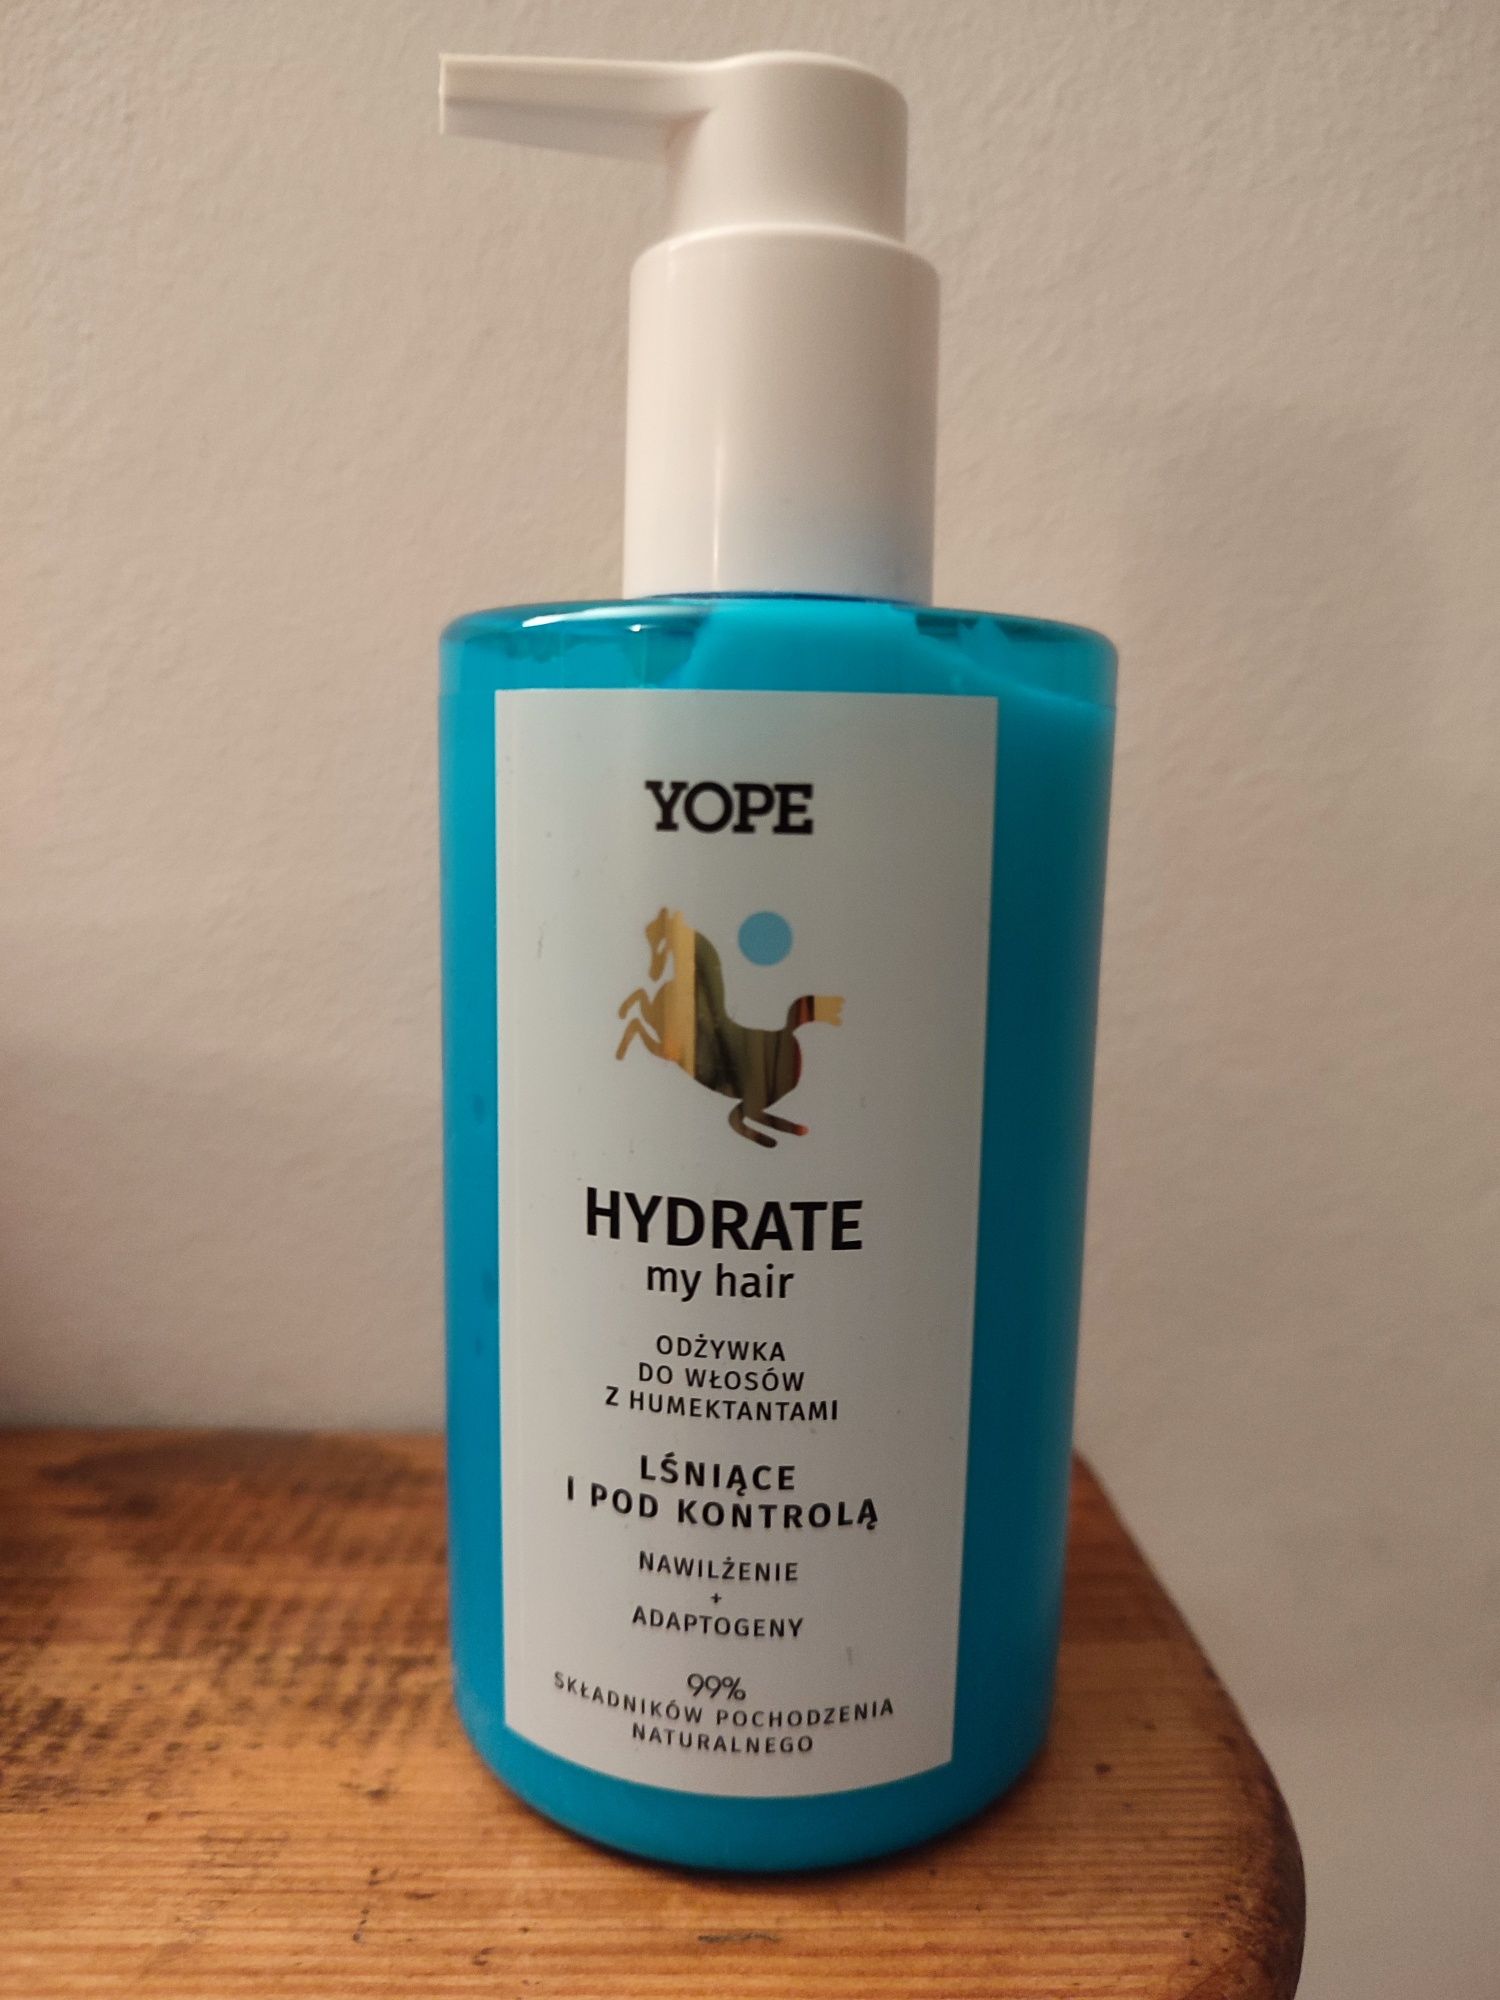 Odżywka Yope Hydrate humektanowa nawilżająca